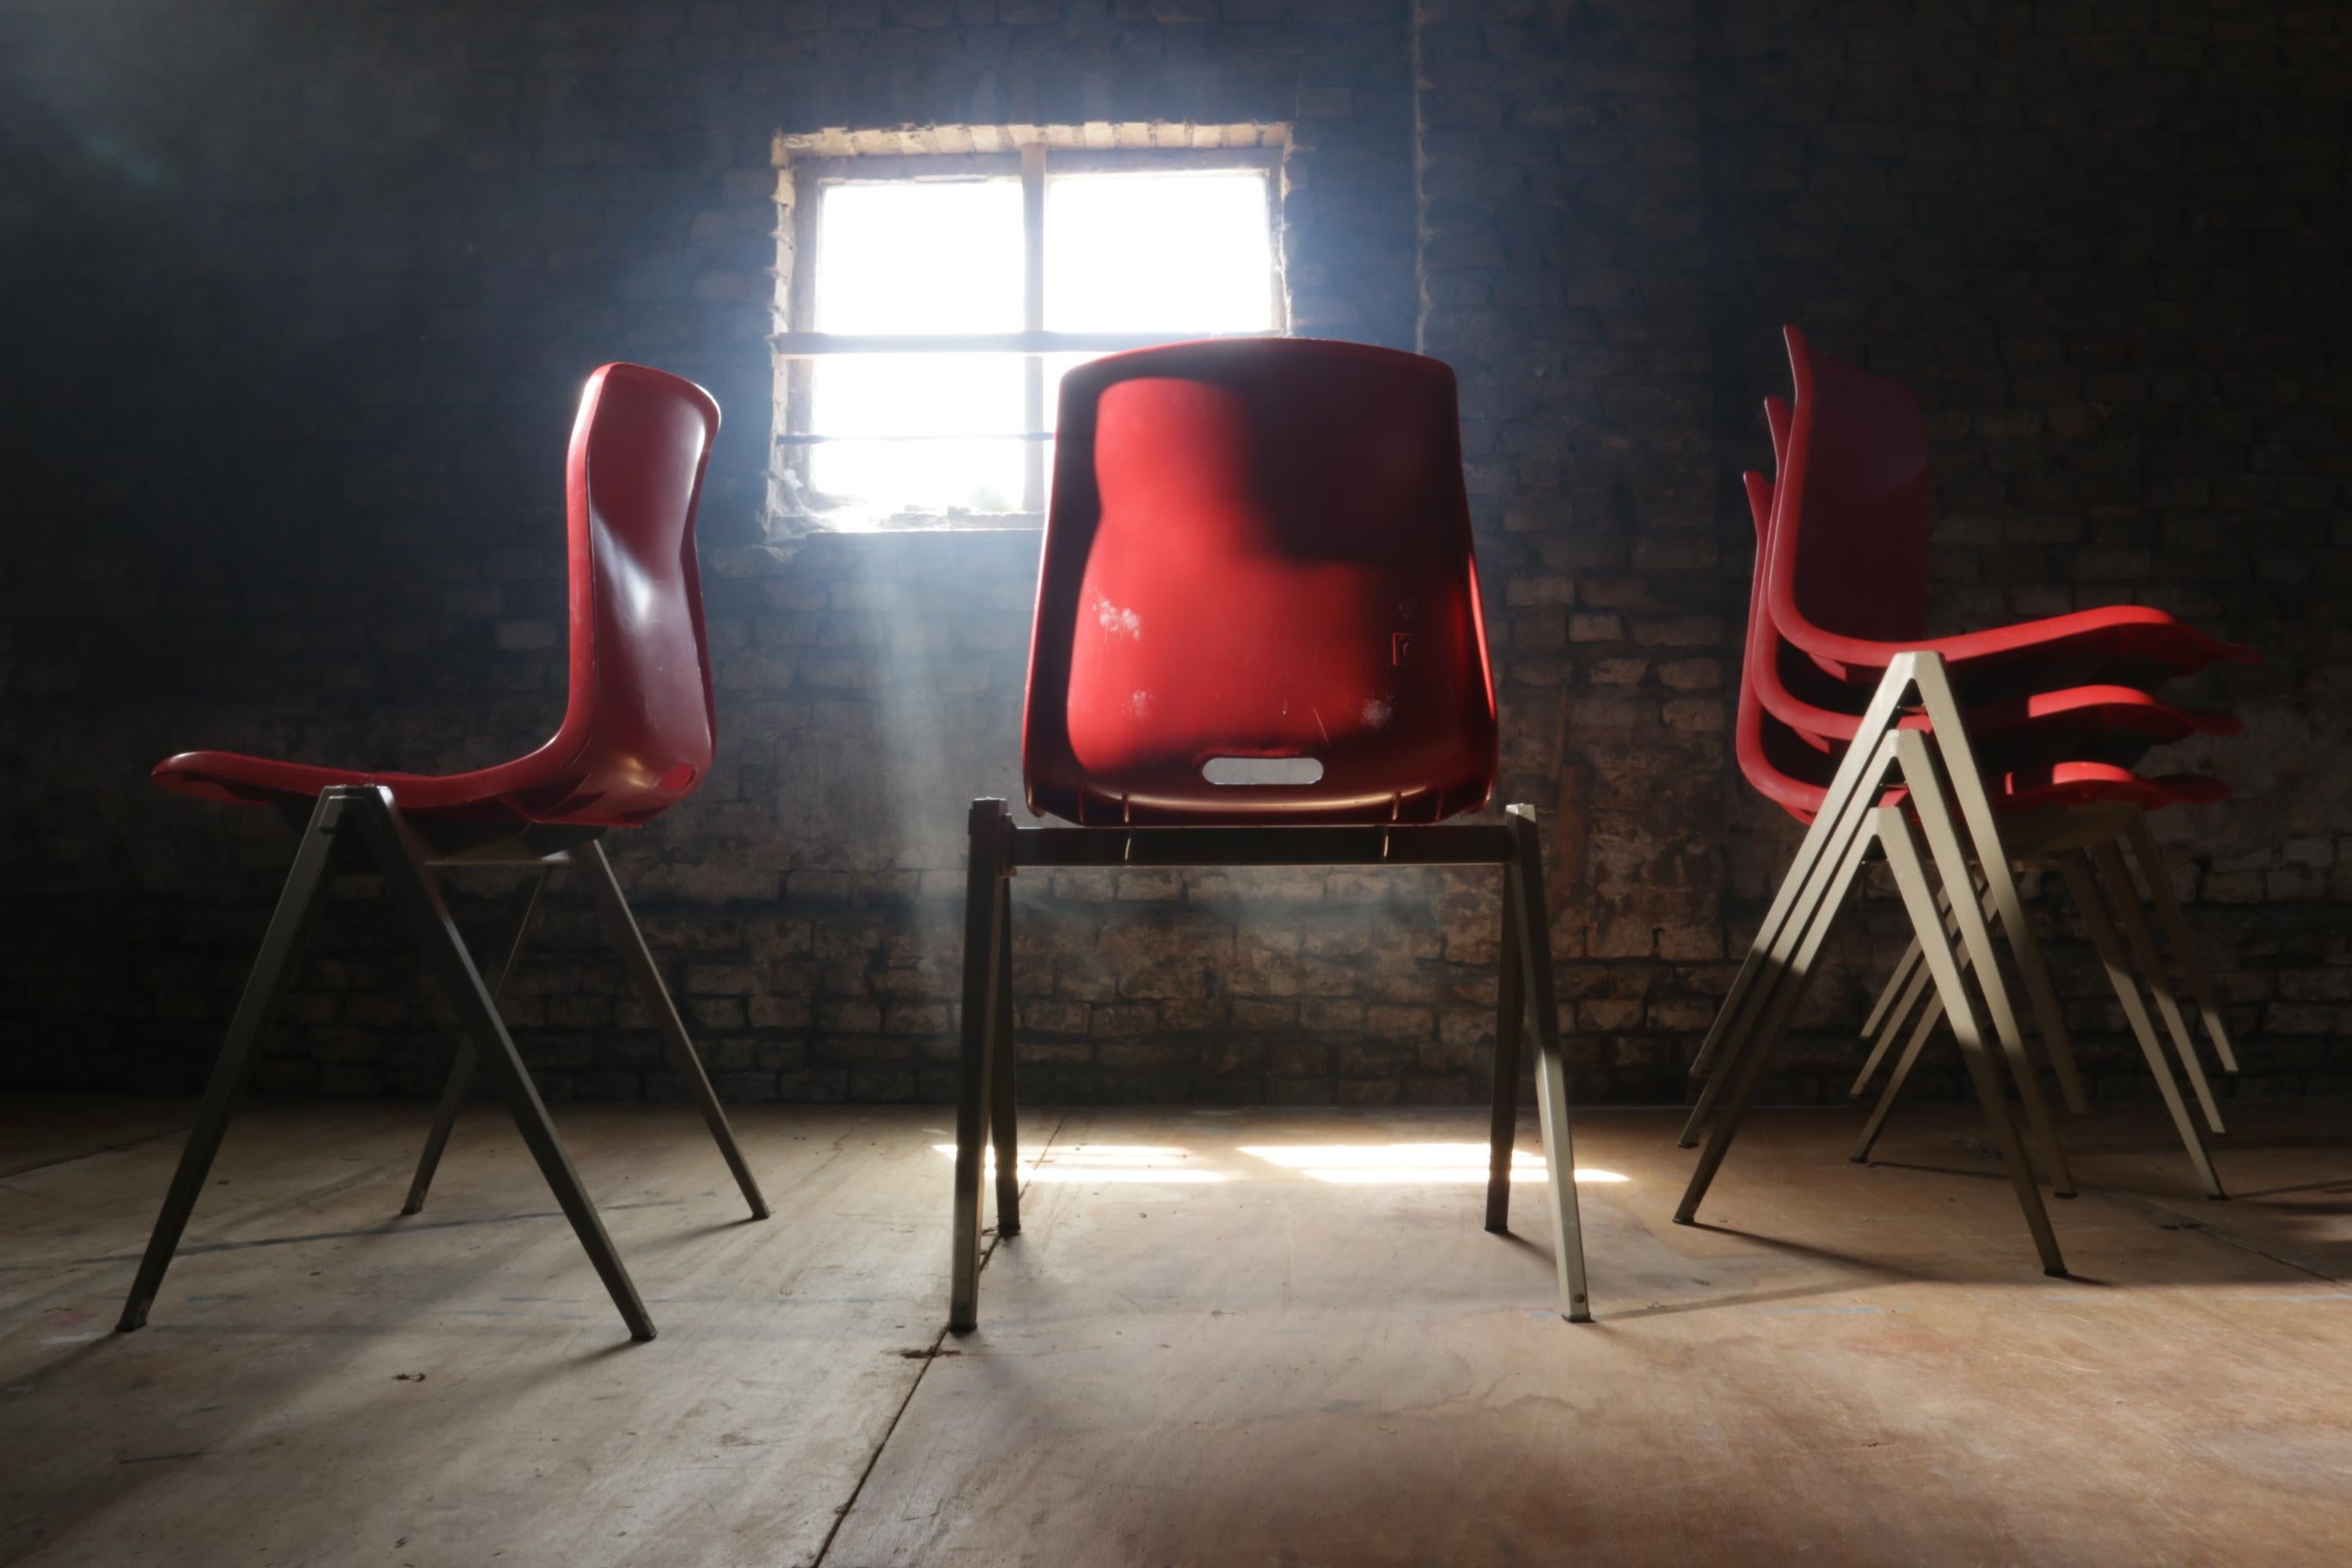 Industrielle Galvanitas S22 Kompass / Pyramide Schulstühle aus den 1960er Jahren.
Der Stuhl hat ein hellgrau beschichtetes Metallgestell, einen kunststoffgeformten Sitz mit geschlossener Schale in roter Farbe.
Diese Beine sind sehr leicht